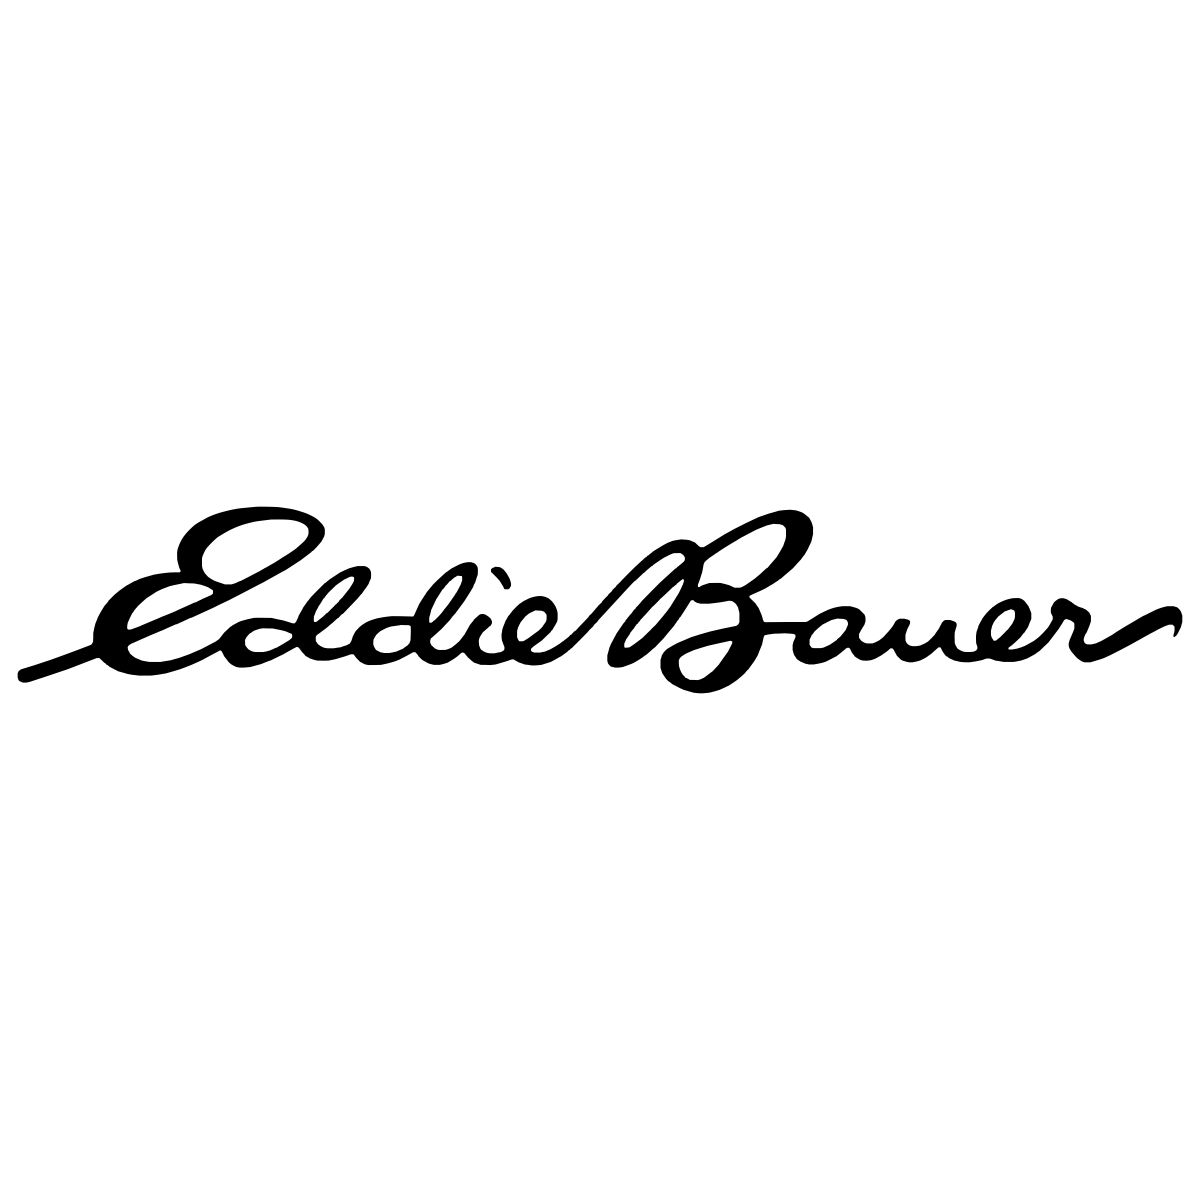 Eddie Bauer Logo